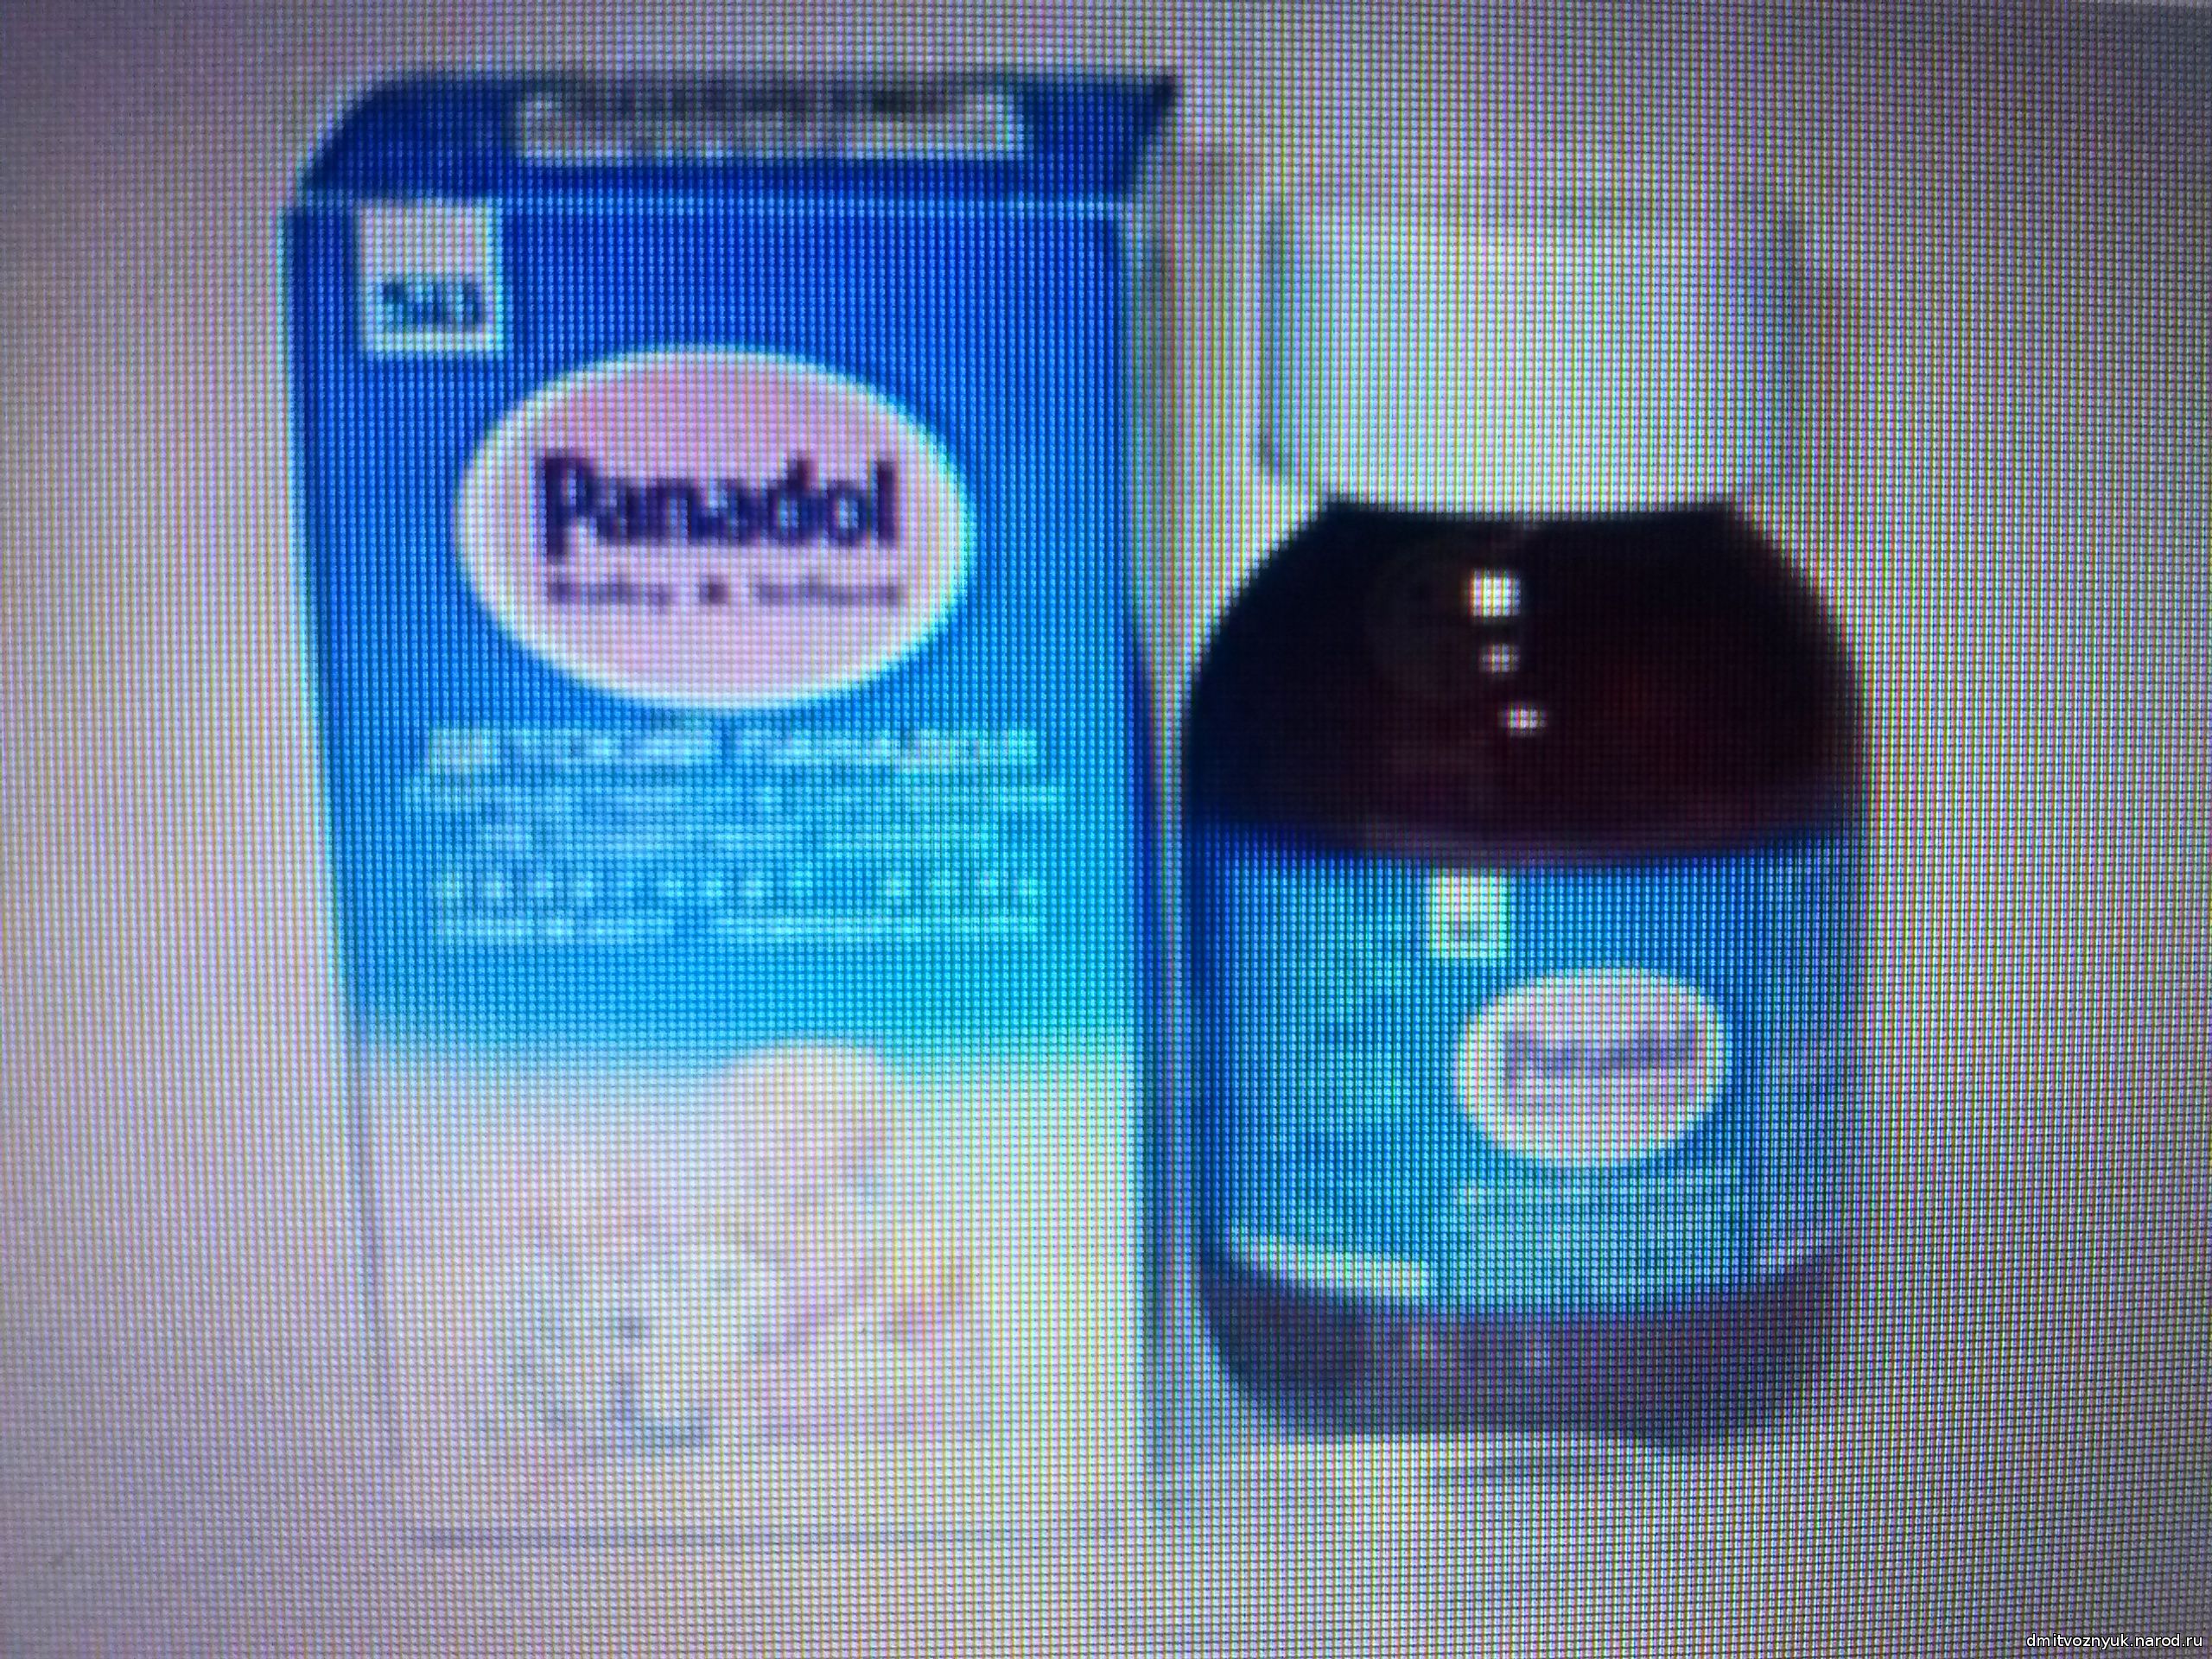 жаропонижающее средство панадол